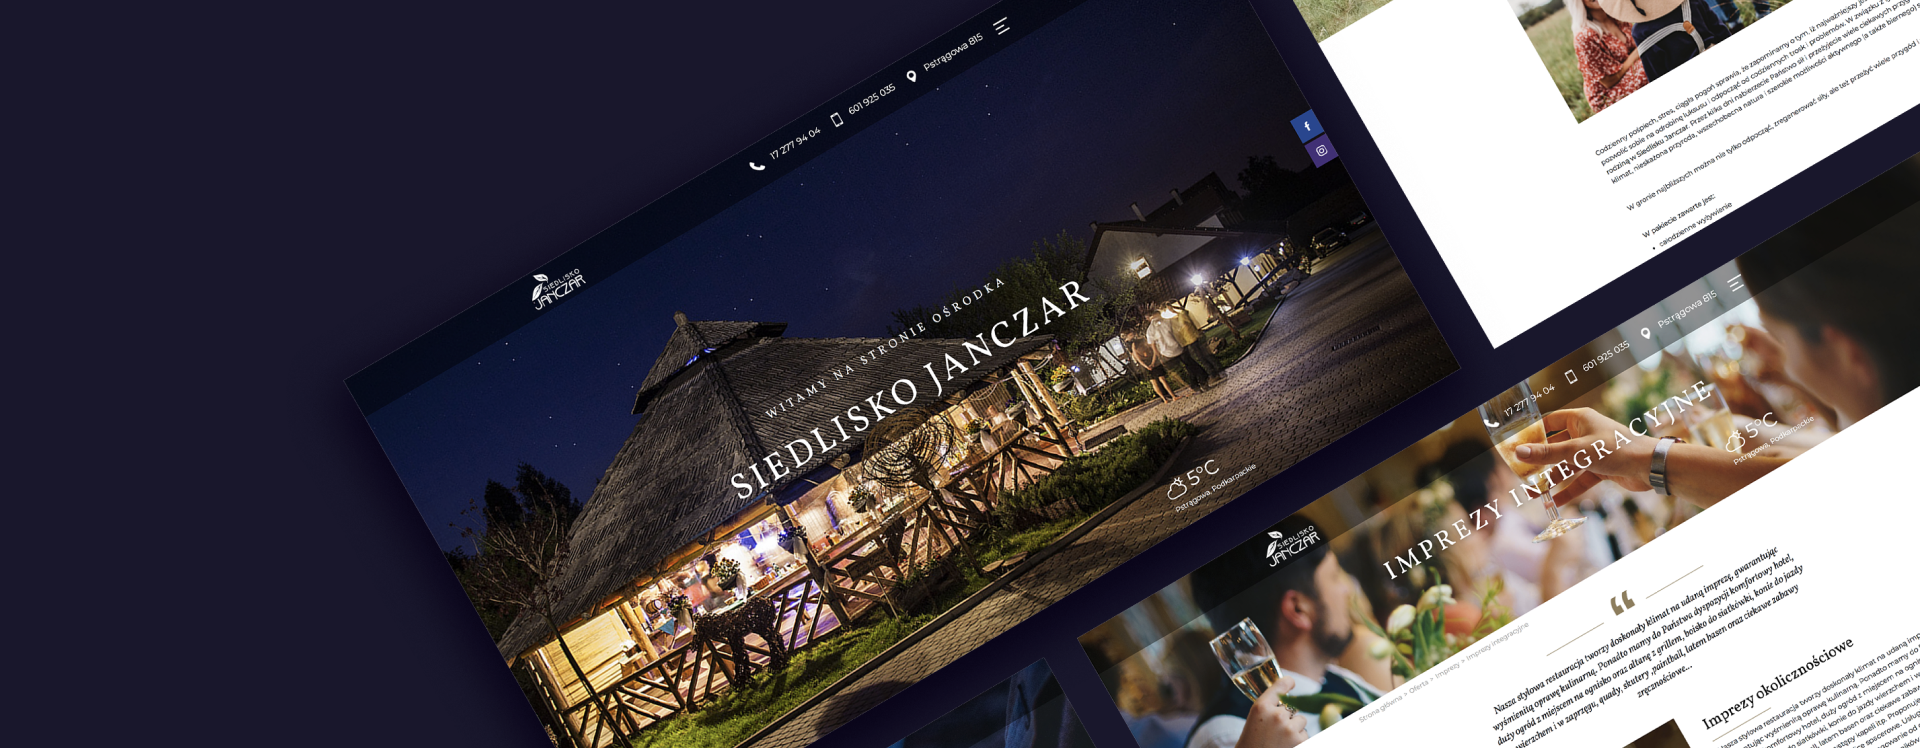 Realizacja strony www dla hotelu i restauracji Siedlisko Janczar